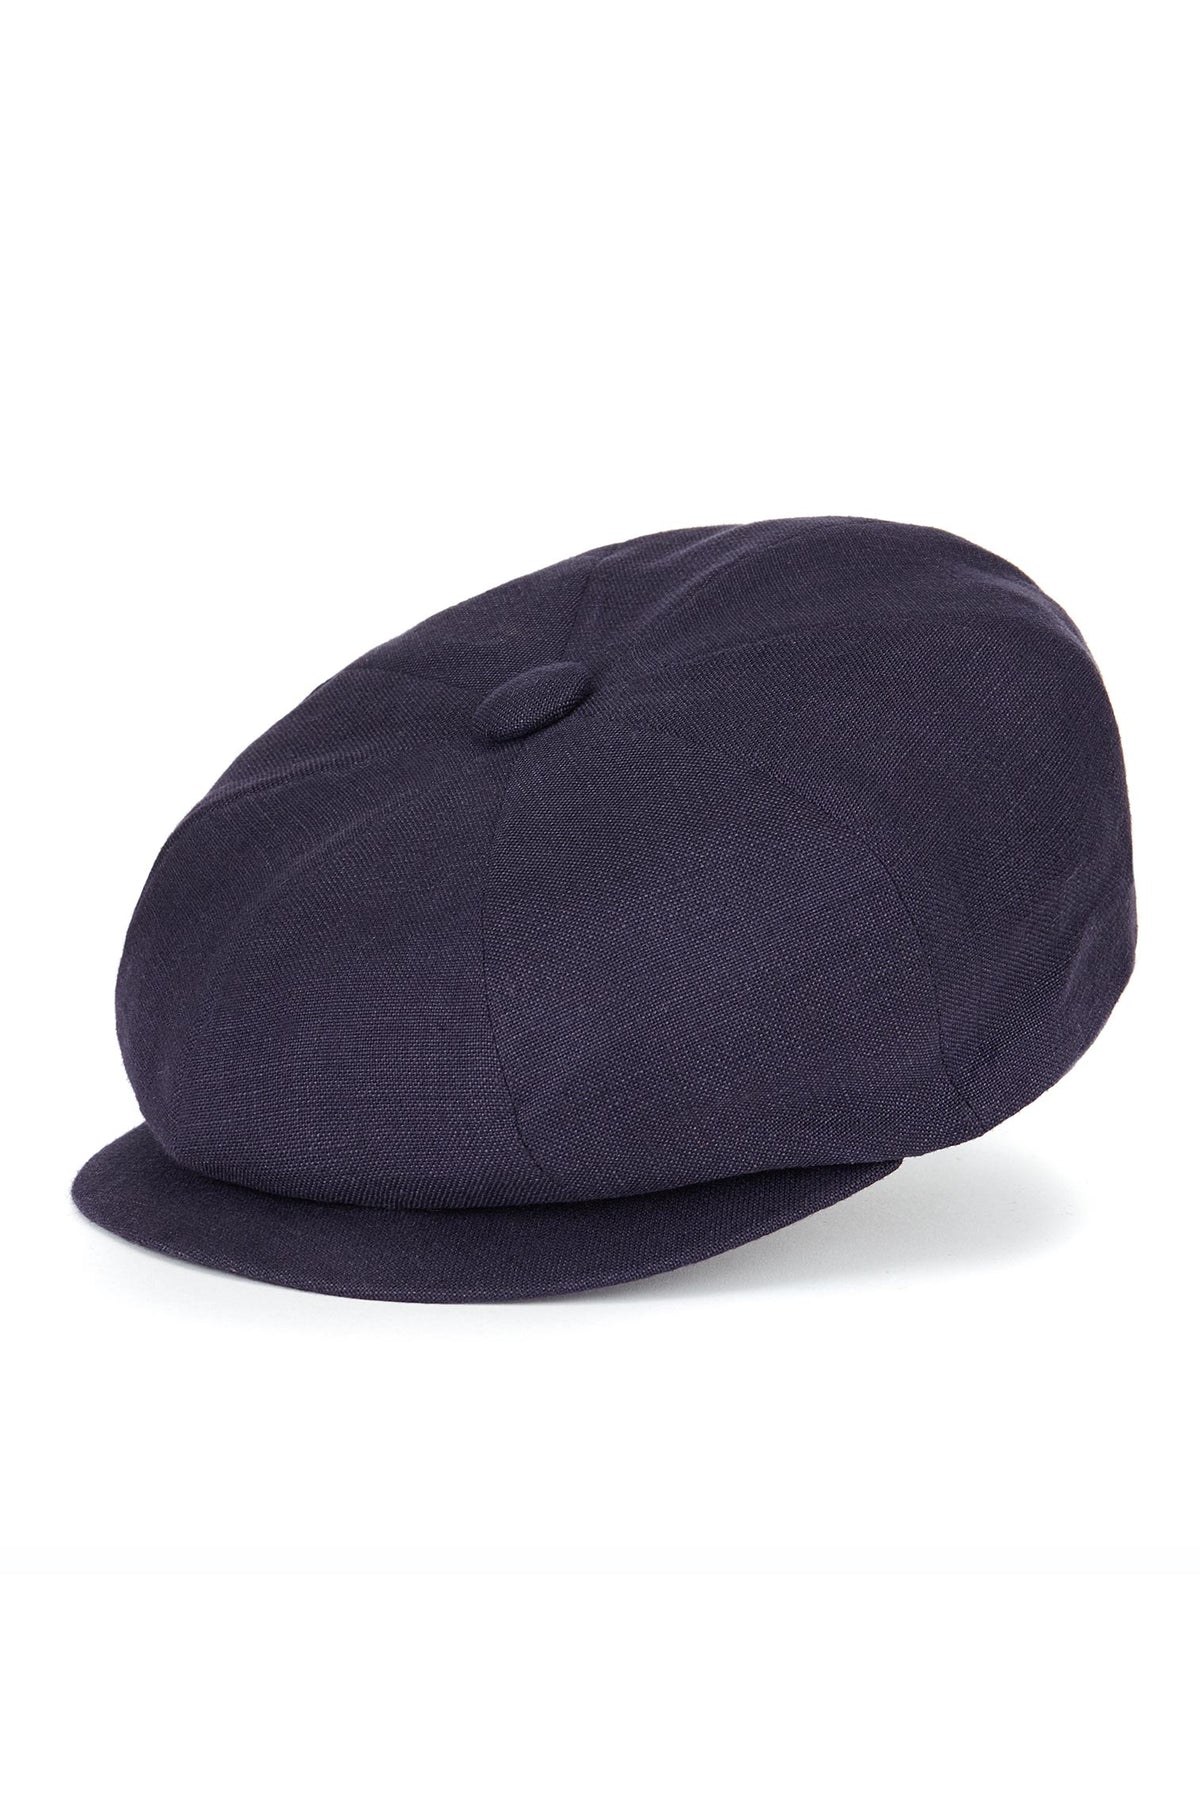 Navy Linen Muirfield Bakerboy Cap - Lock & Co. Hats for Men & Women